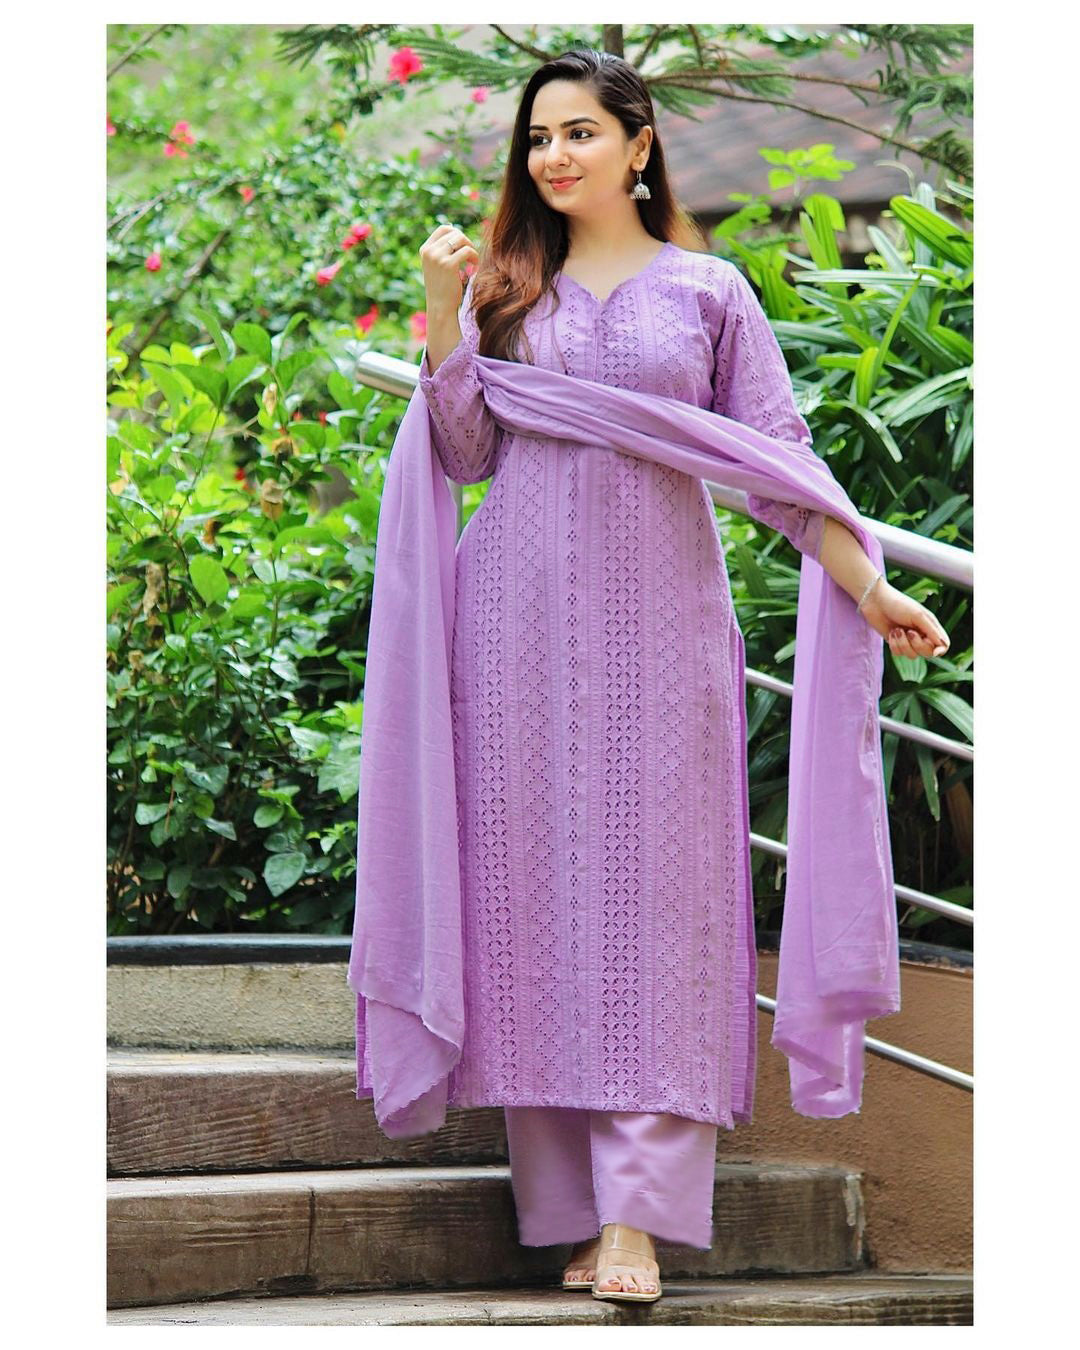 Party Wear Indian Designer Green Rayon Salwar Kameez Ethnic Punjabi Shalwar  Suit | eBay